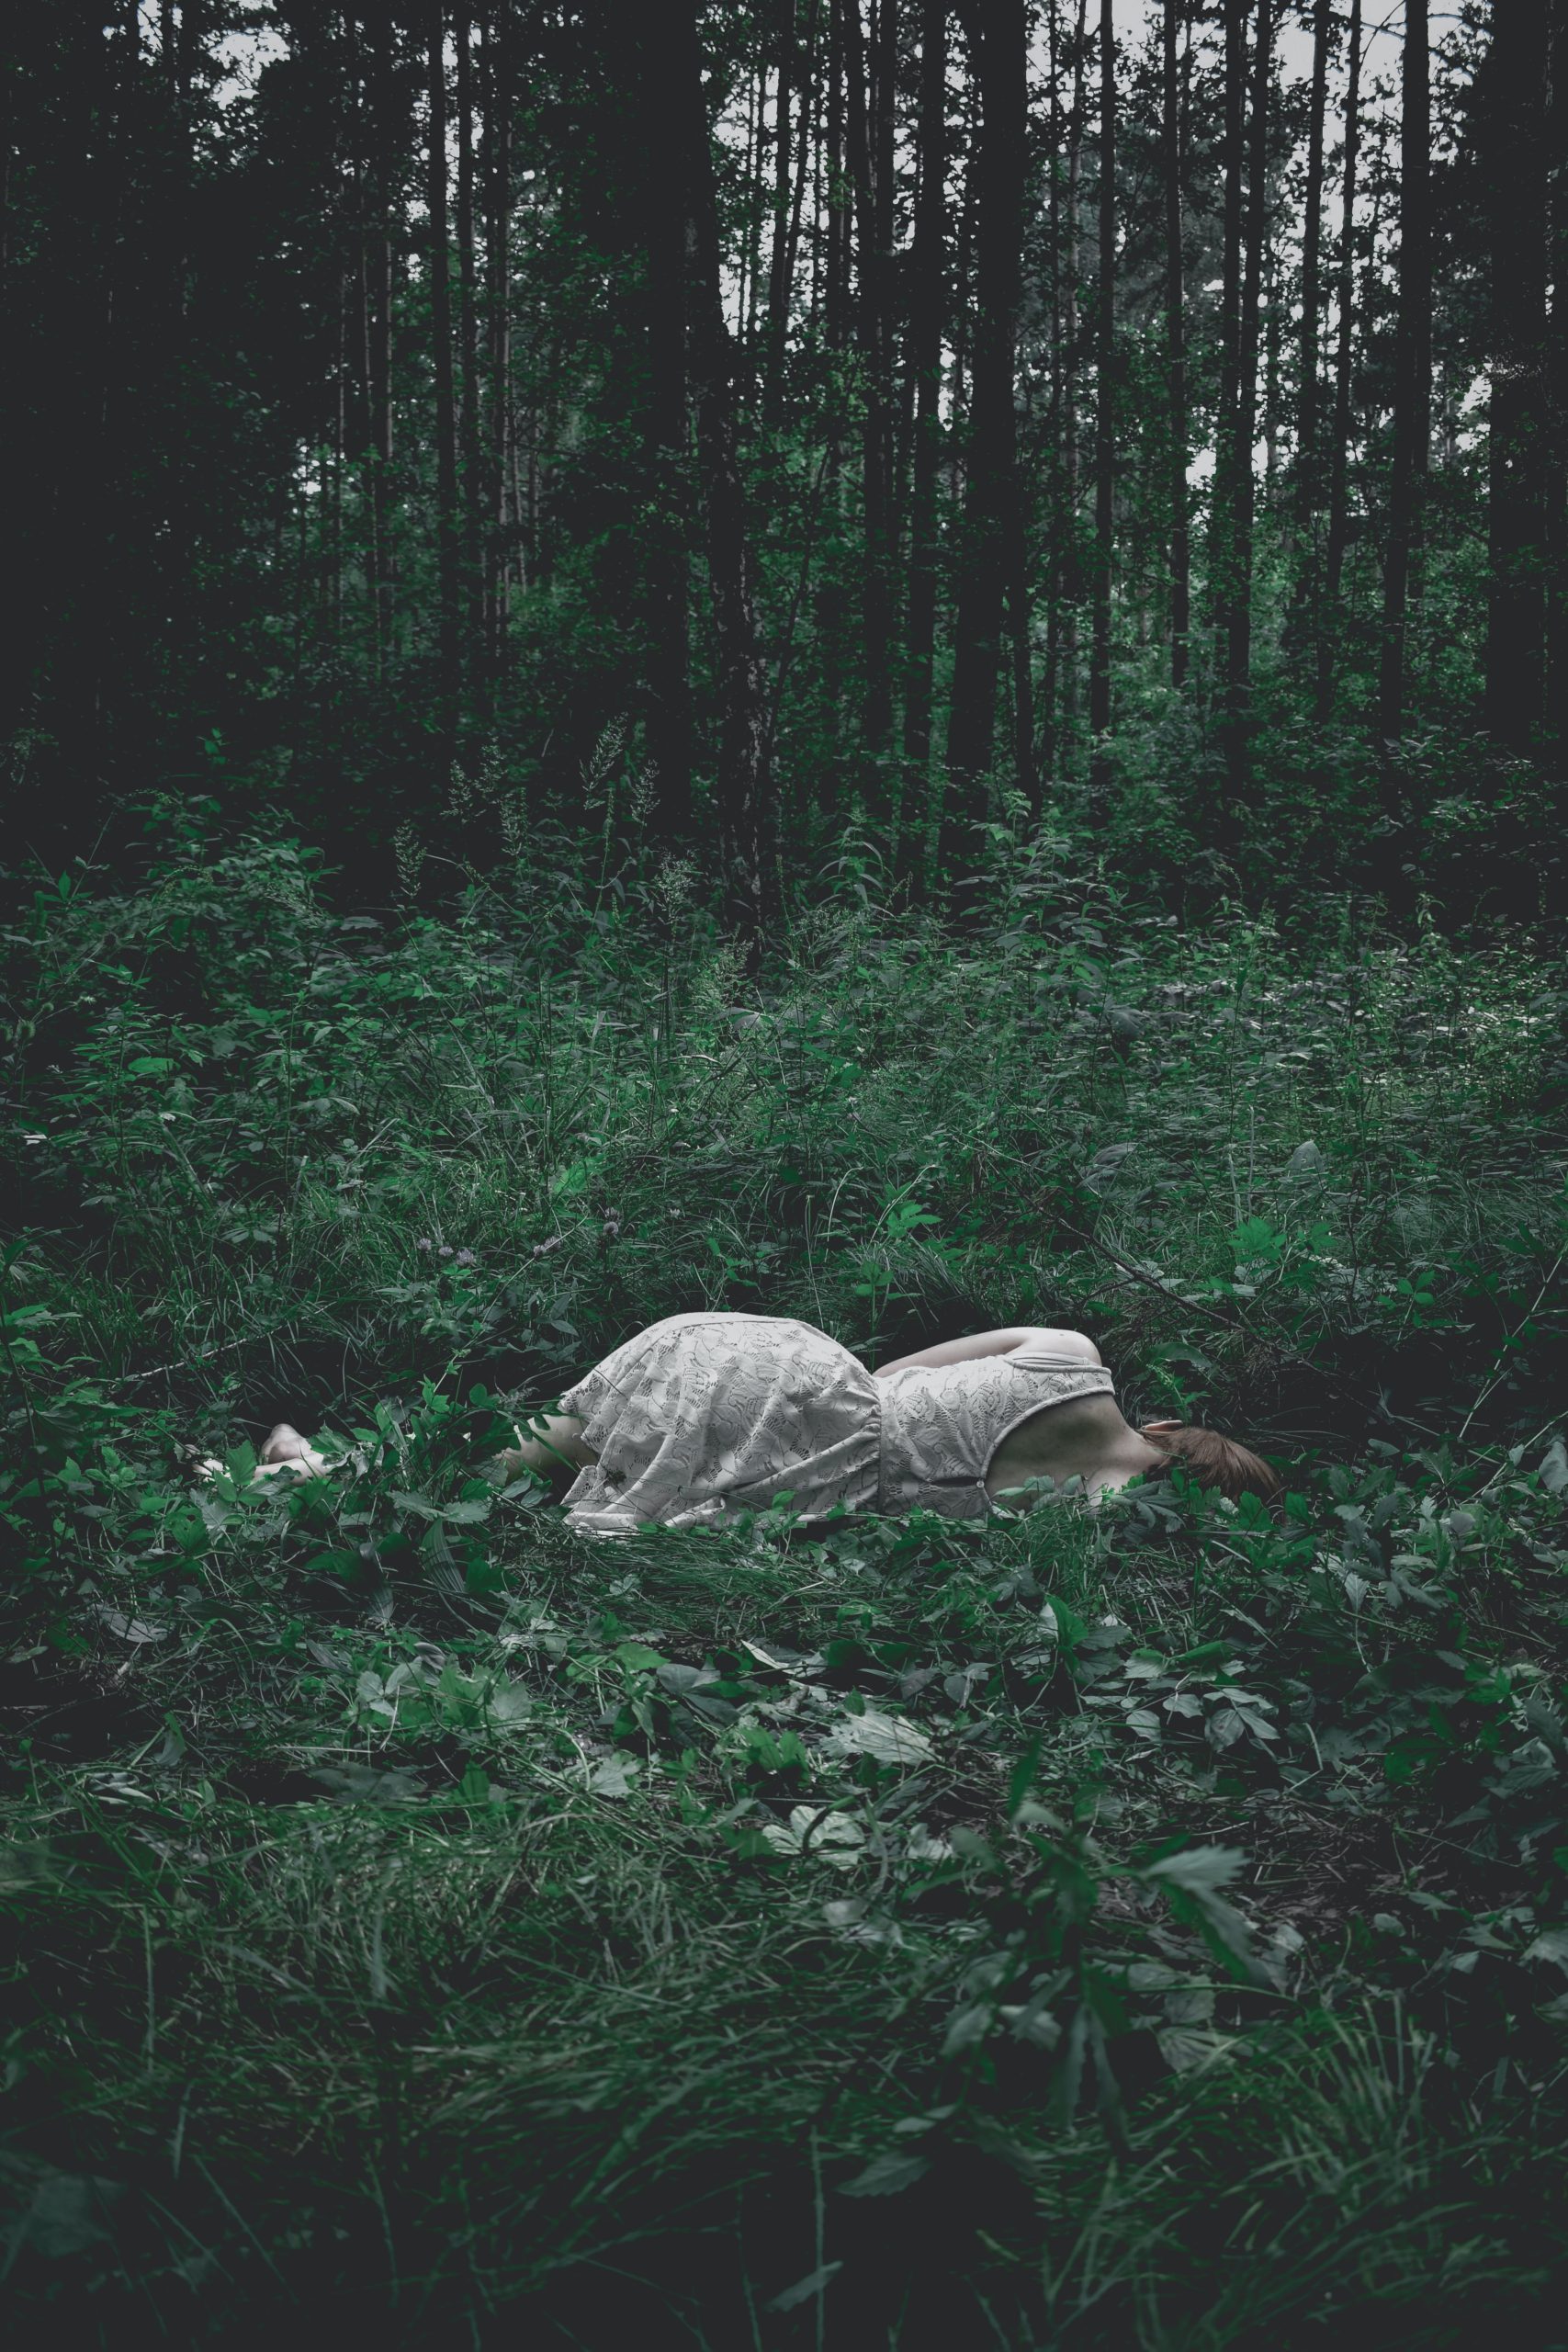 Imagem poética de mulher de vestido branco deitada na grama de costas para o fotógrafo. O ambiente ao redor da mulher é como uma relva densa.